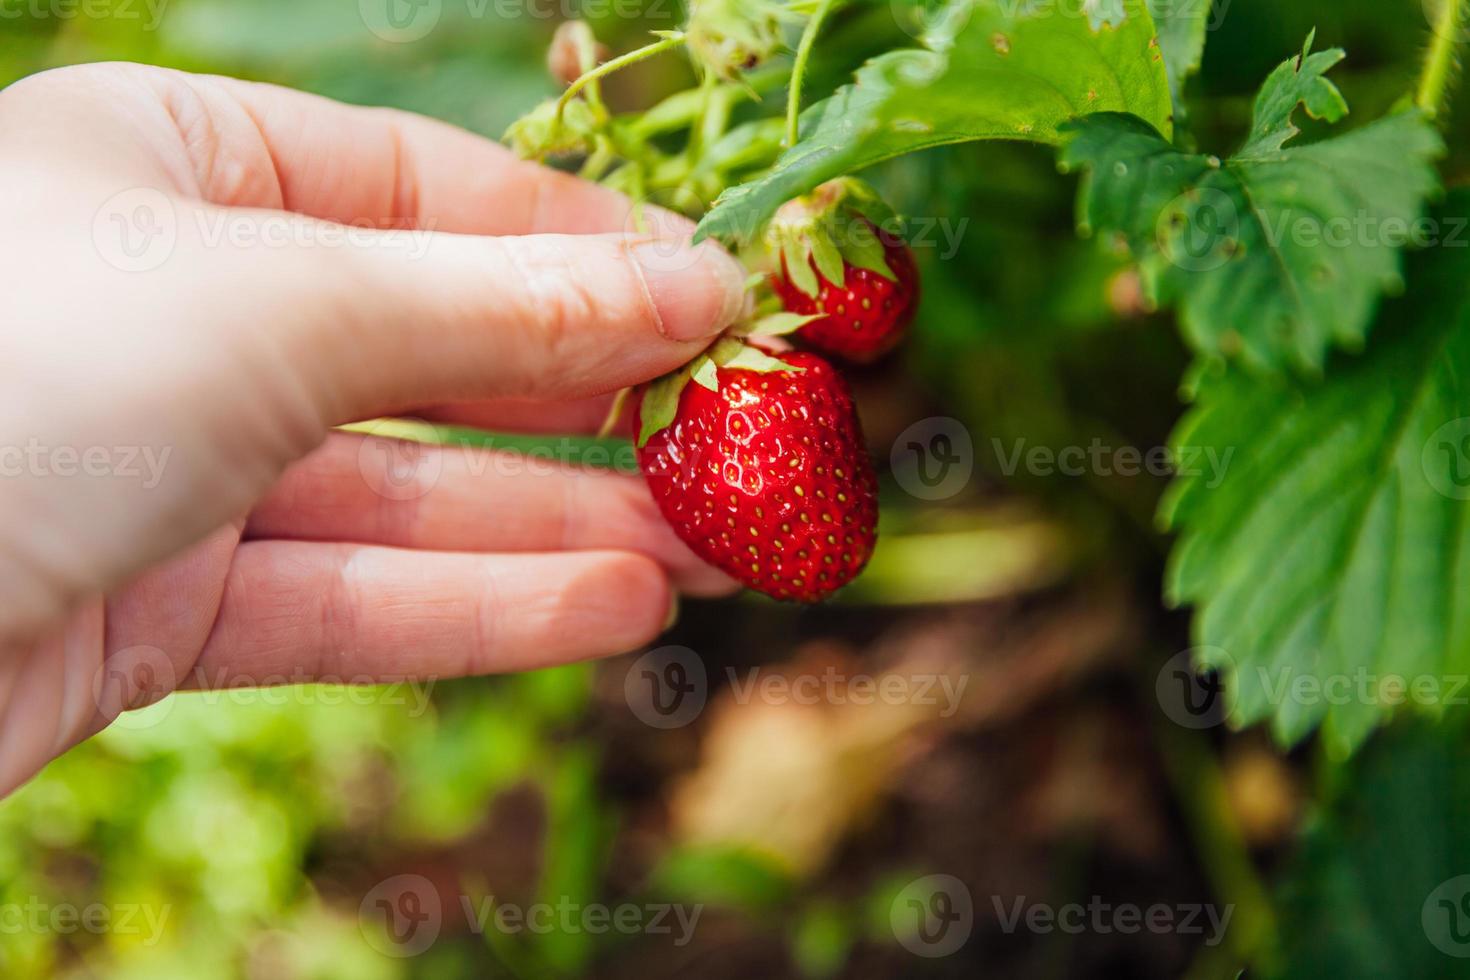 garten- und landwirtschaftskonzept. weibliche landarbeiterin hand, die rote frische reife organische erdbeere im garten erntet. vegane vegetarische Lebensmittelproduktion aus eigenem Anbau. Frau pflückt Erdbeeren auf dem Feld. foto